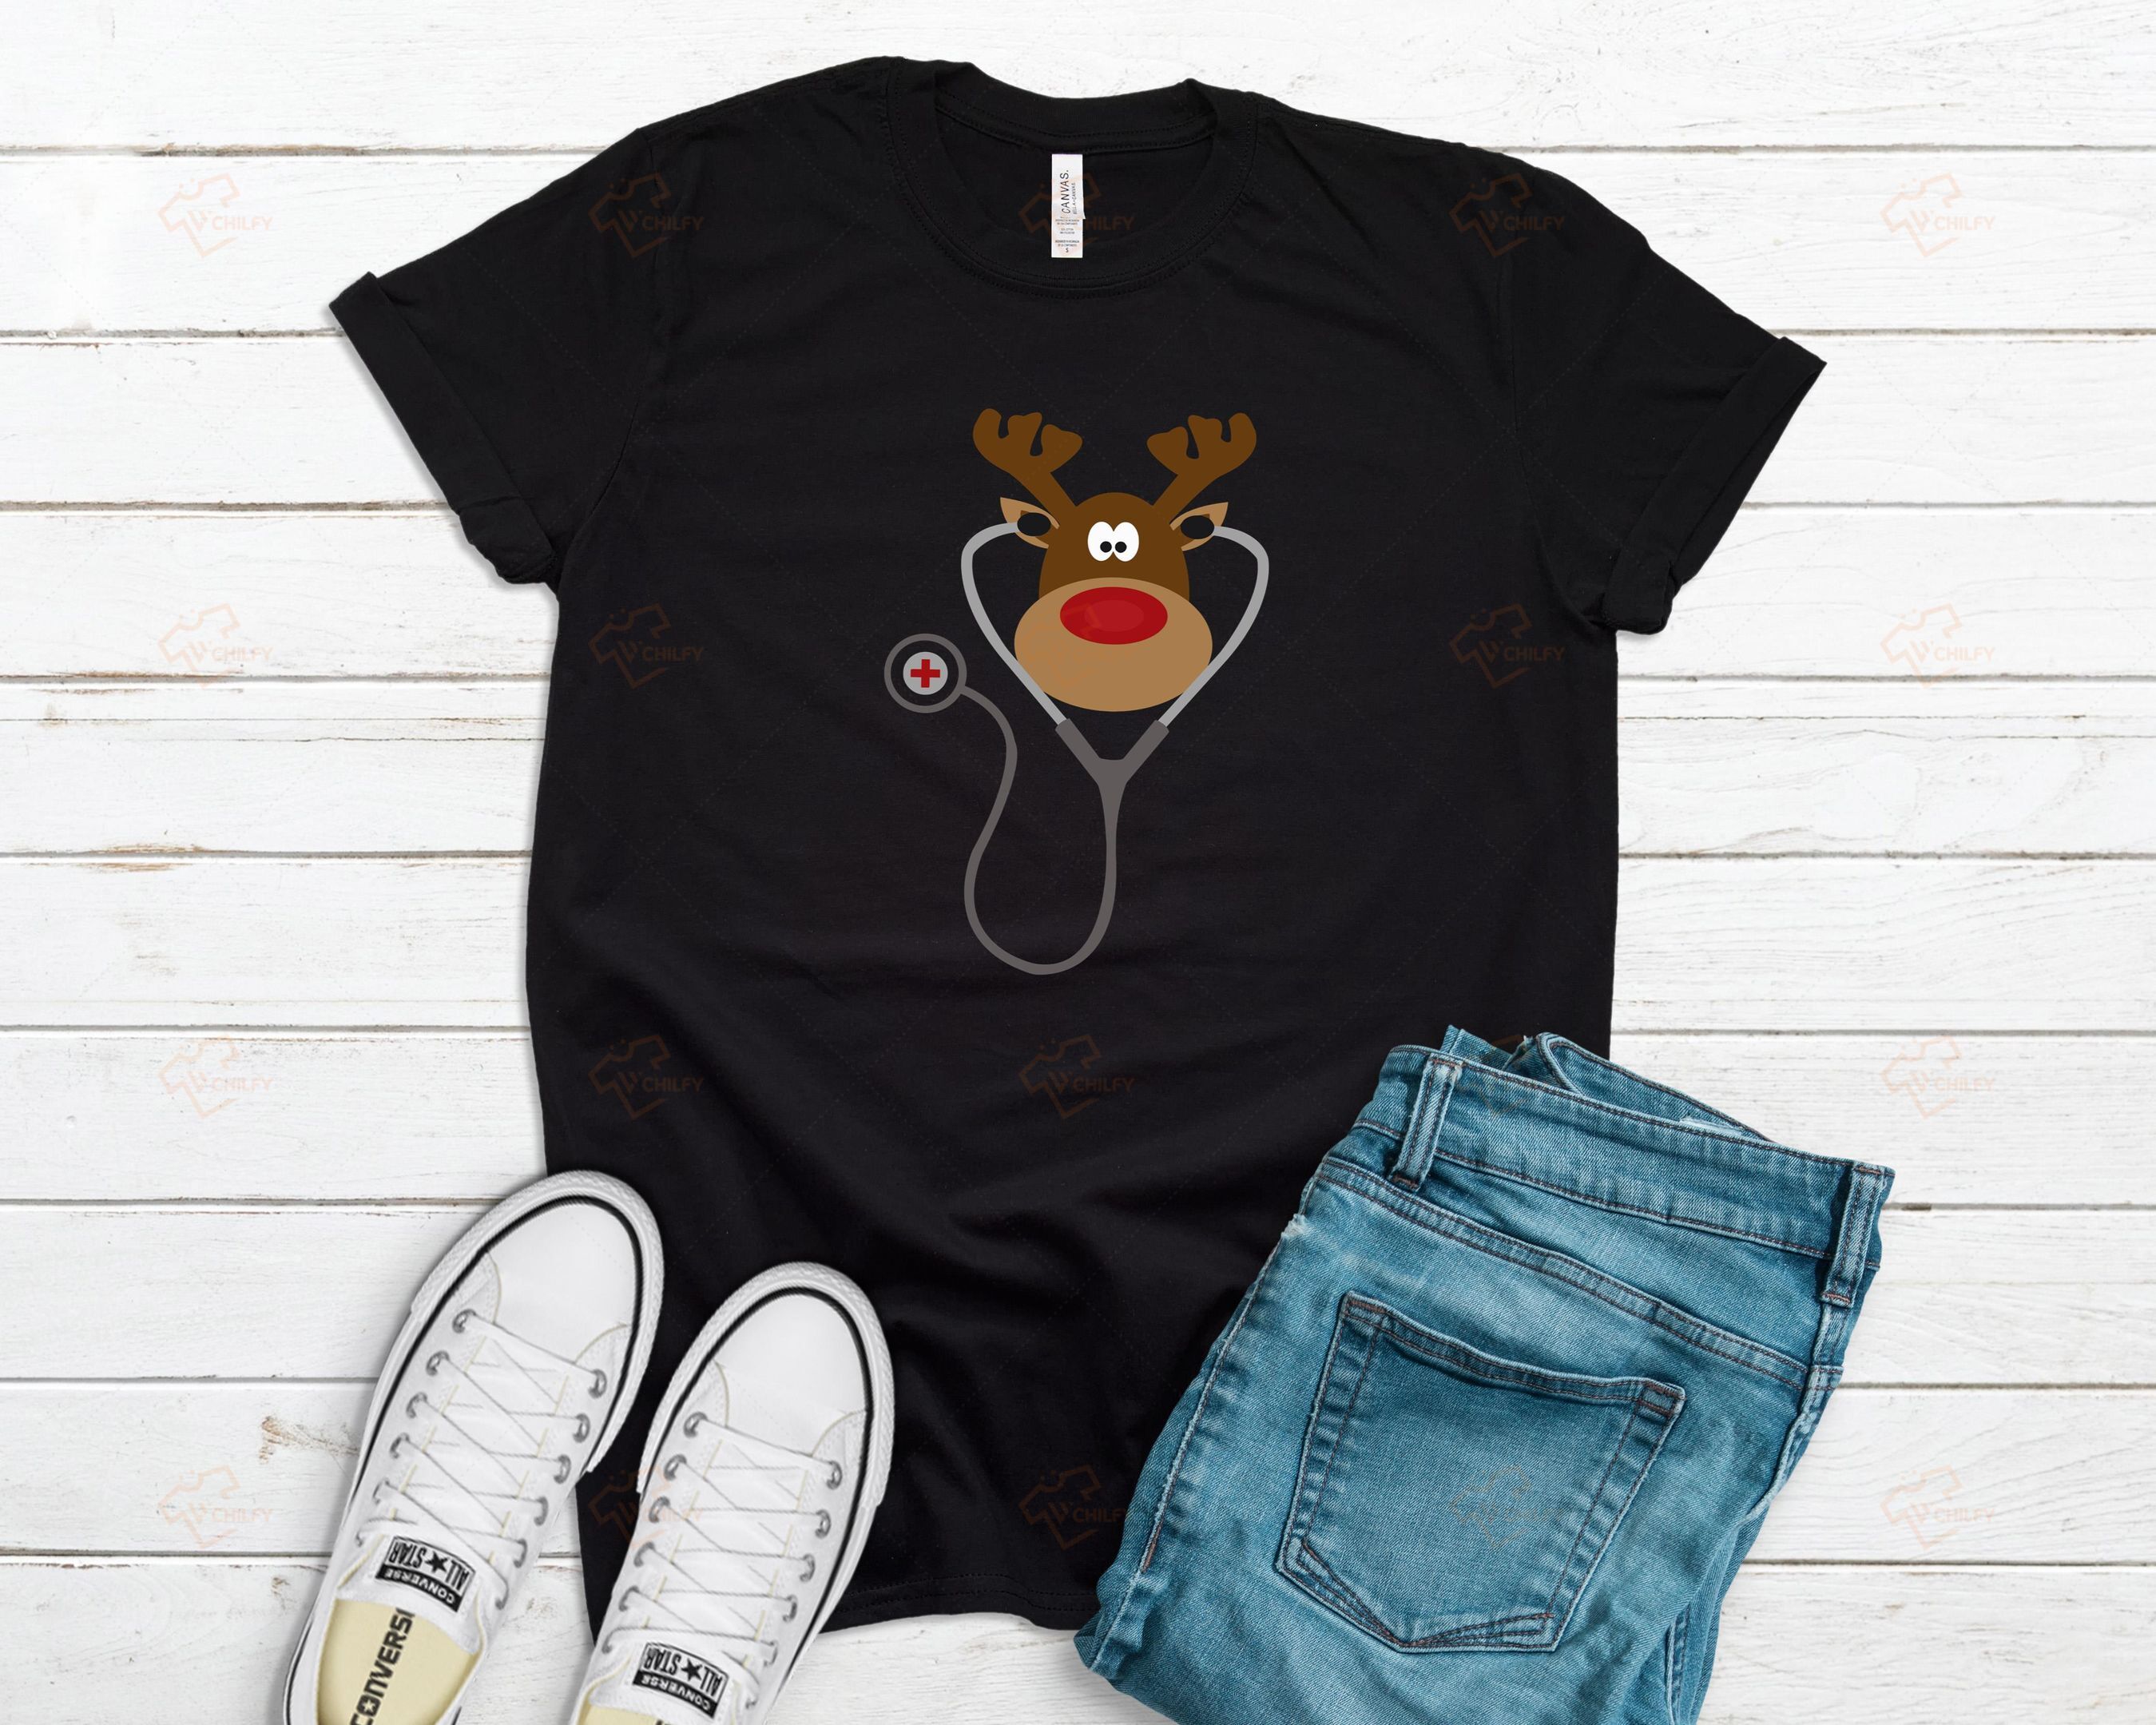 Nurse Reindeer Shirt, Funny Christmas Nurse Shirt, Xmas Gift For Nurse, Chrismast Gift, RN Nurse